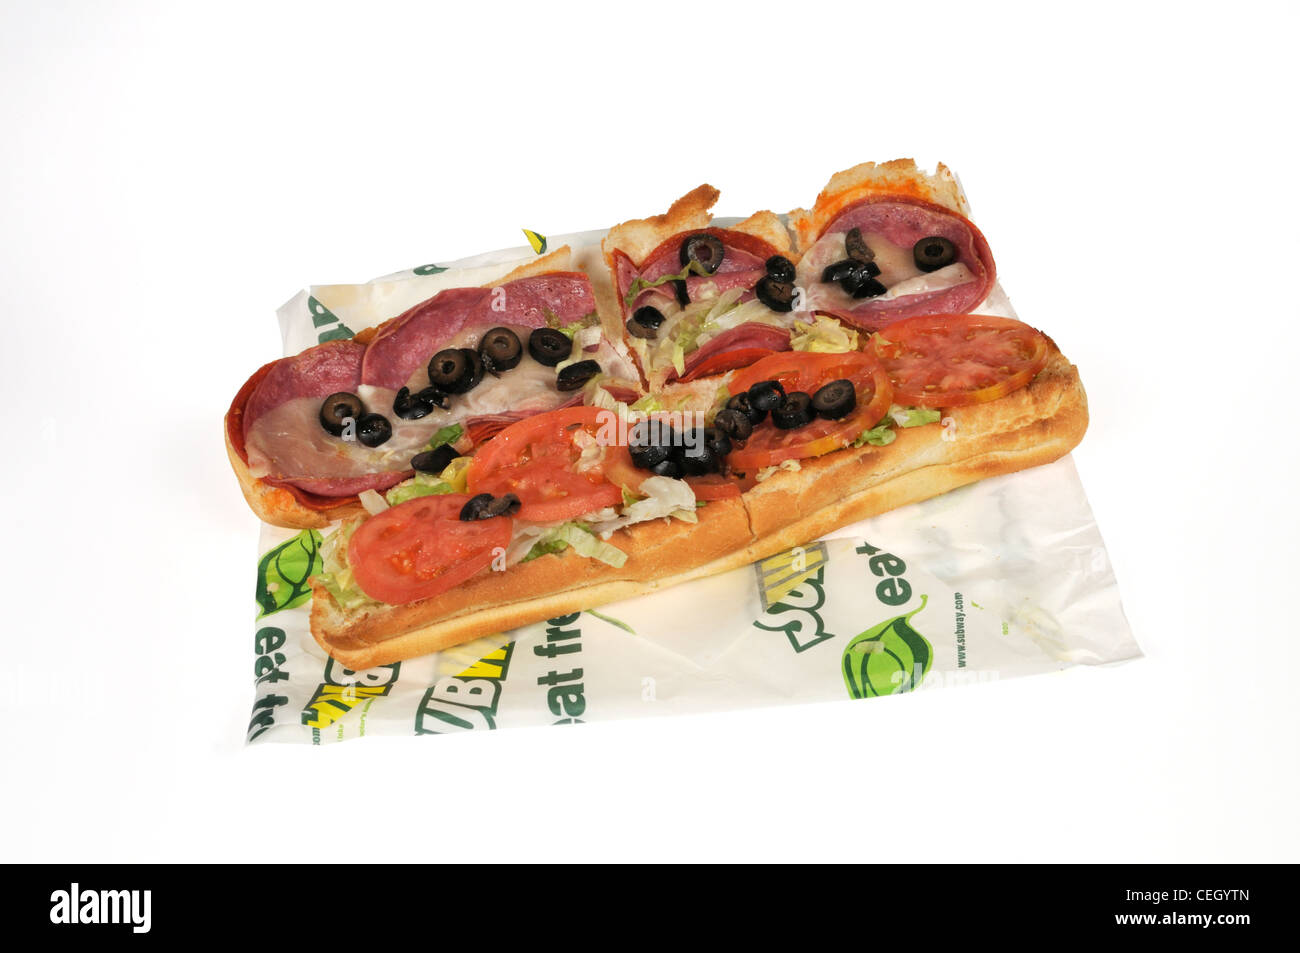 La charcuterie italienne épicée métro sandwich sandwich sous-marin avec laitue, tomate olives noires sur l'emballage sur fond blanc dentelle USA. Banque D'Images